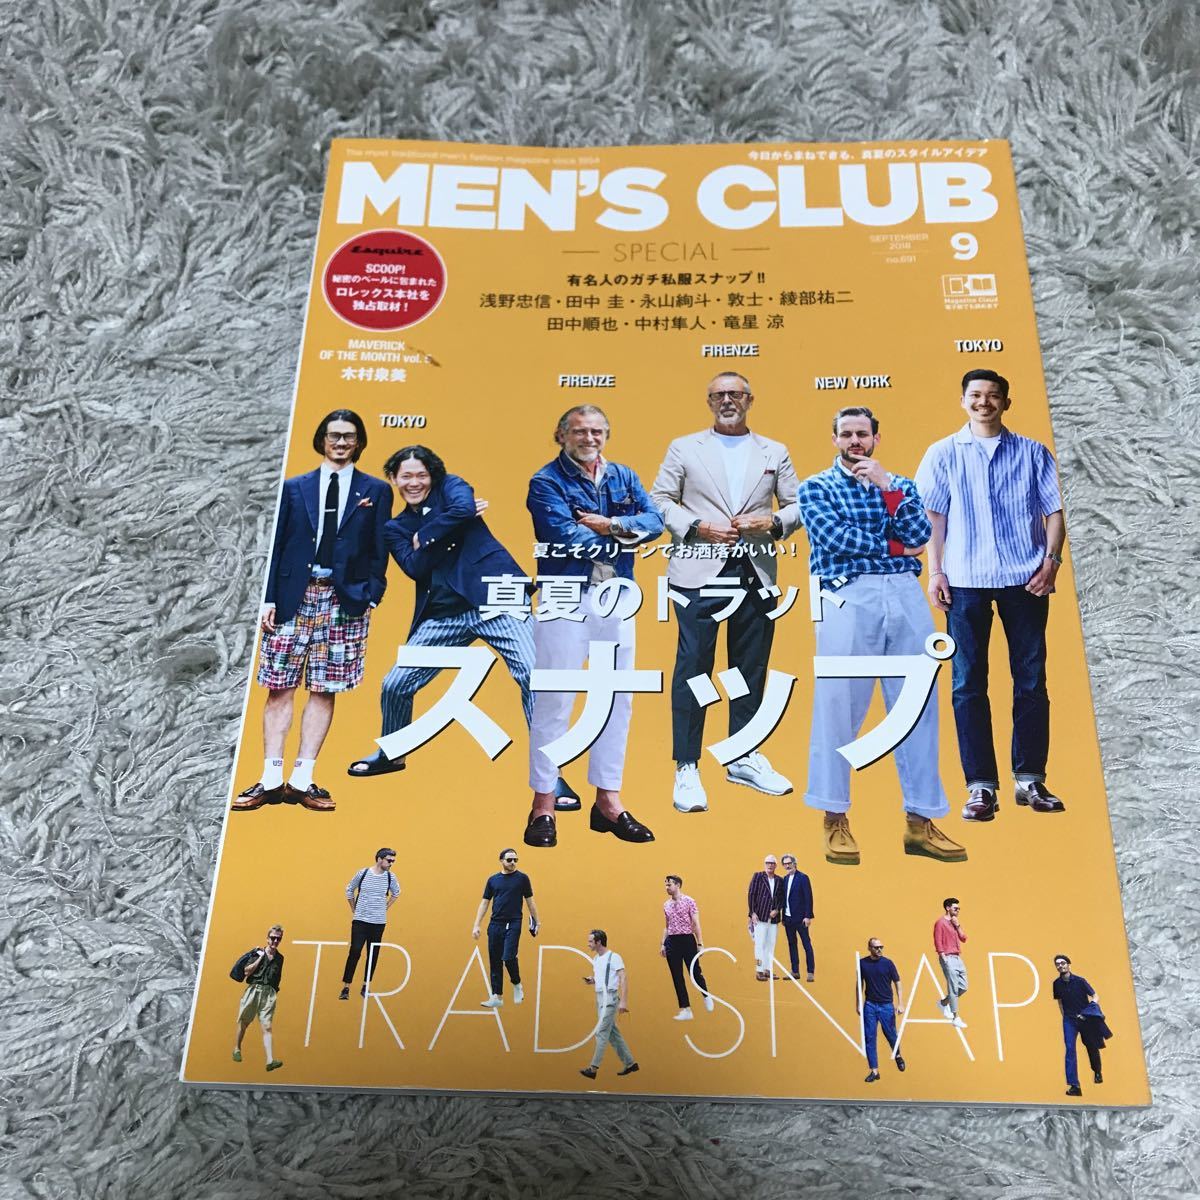 MEN'S CLUB メンズクラブ 2018 9月 no.691 メンズファッション 雑誌 真夏のトラッド スナップ_画像1